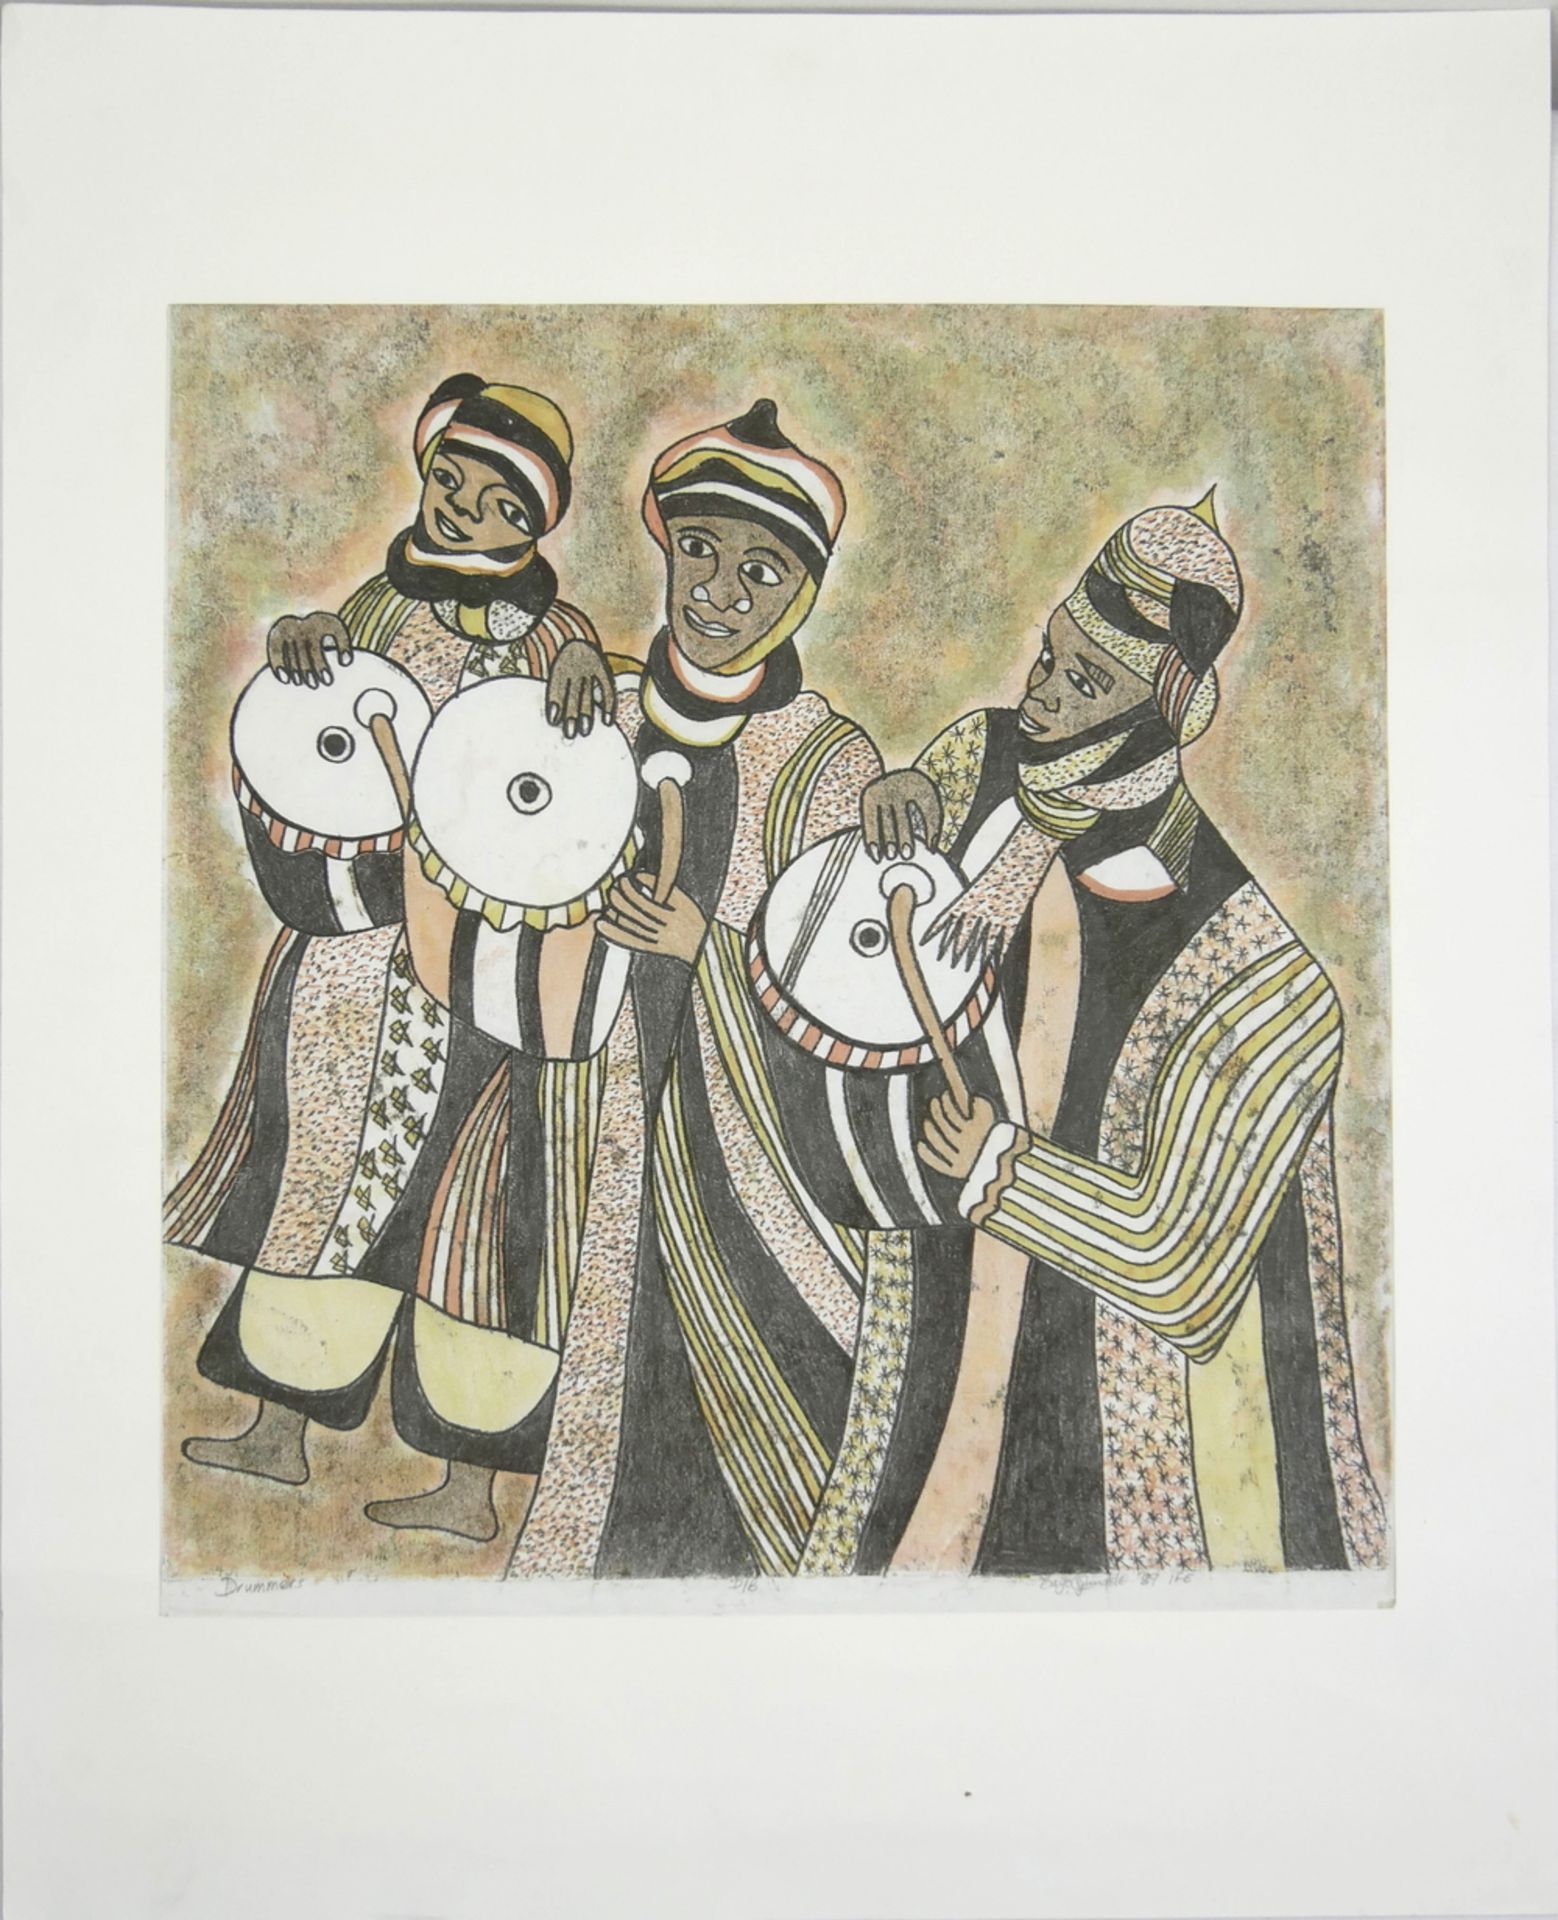 Bayo OGUNDELE (1949) Monotypie "Drummers", rechts unten handsigniert Bayo Ogundele. Gesamtmaße: Höhe